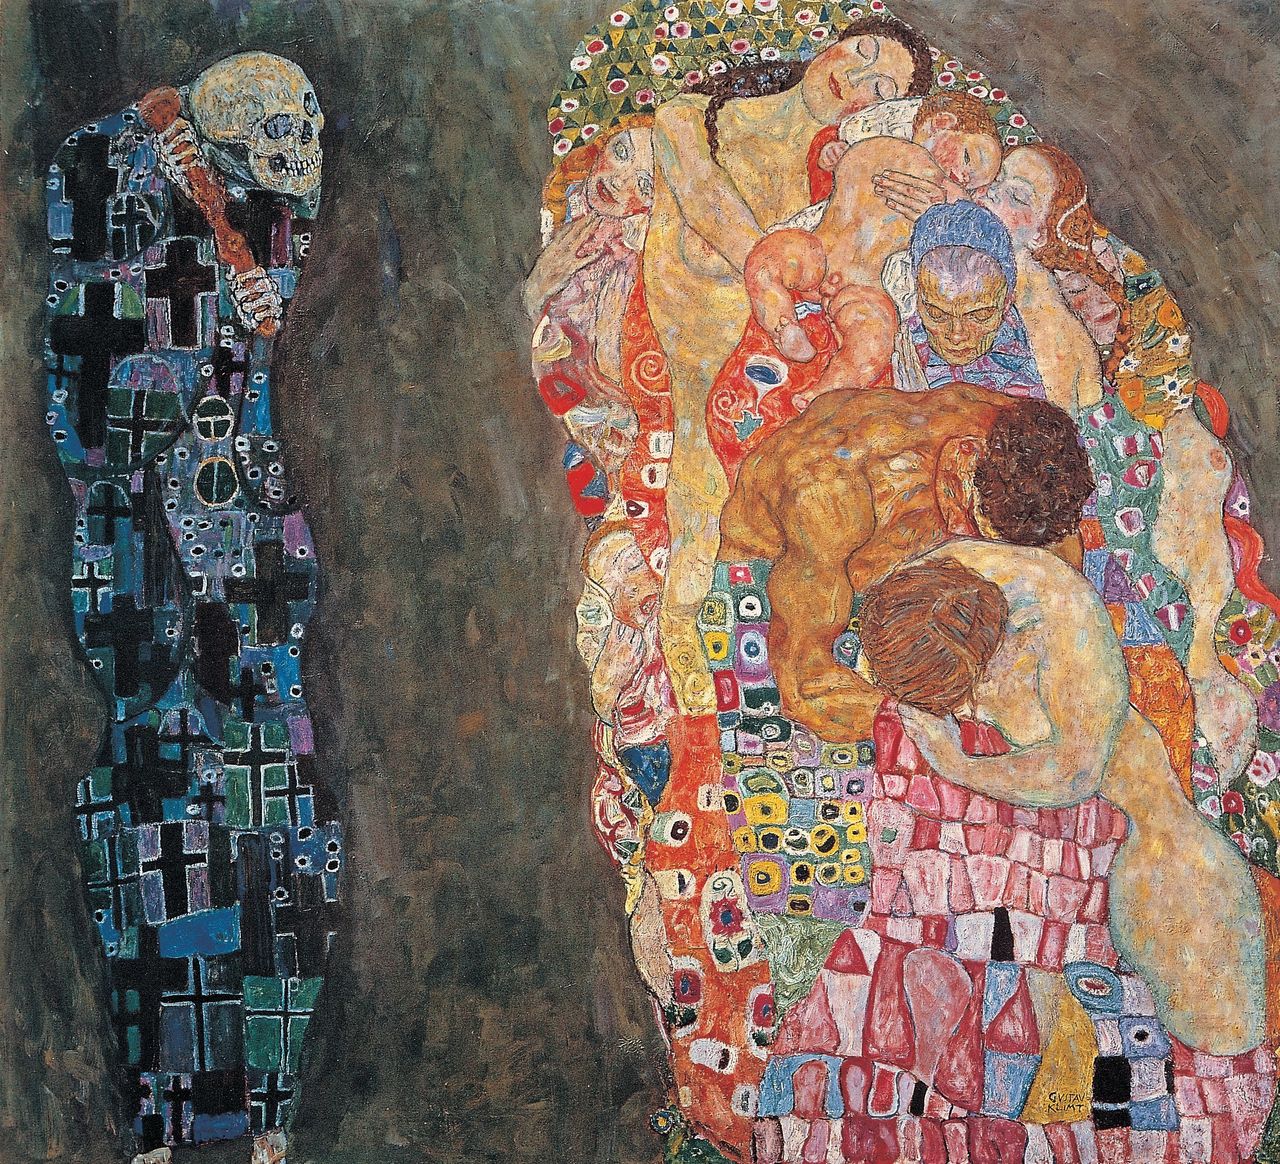 Tod und Leben (Death and Life). Oil on canvas. by Gustav Klimt. Around 1910.